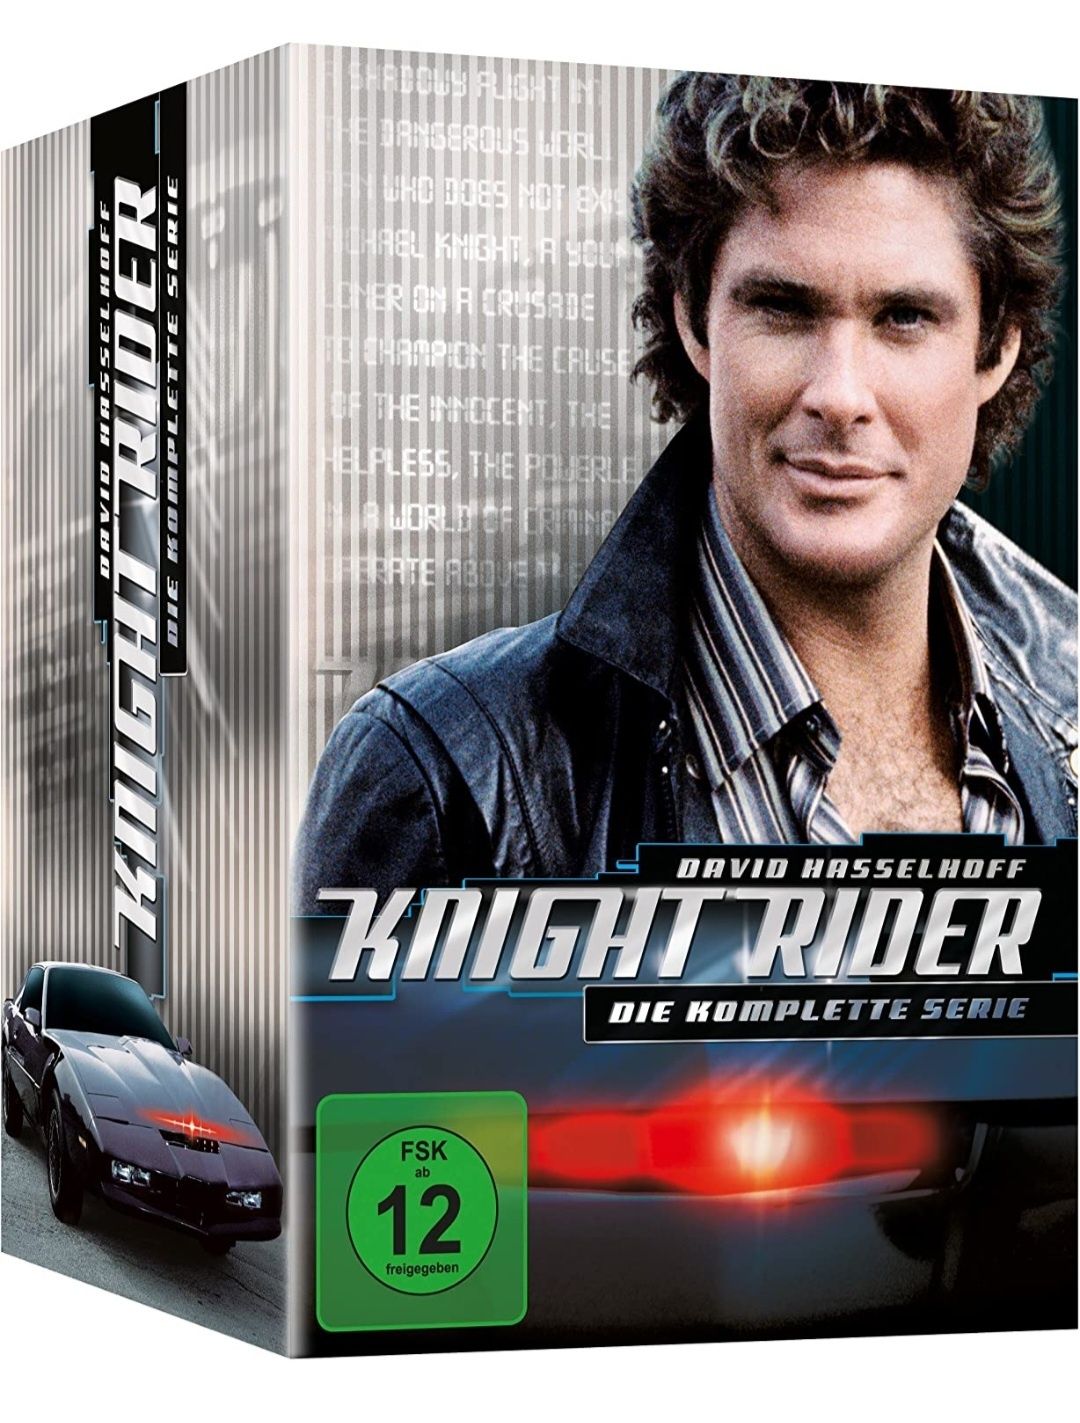 FILM SERIAL Knight Rider -DVD Box Set [26 DVD] Original